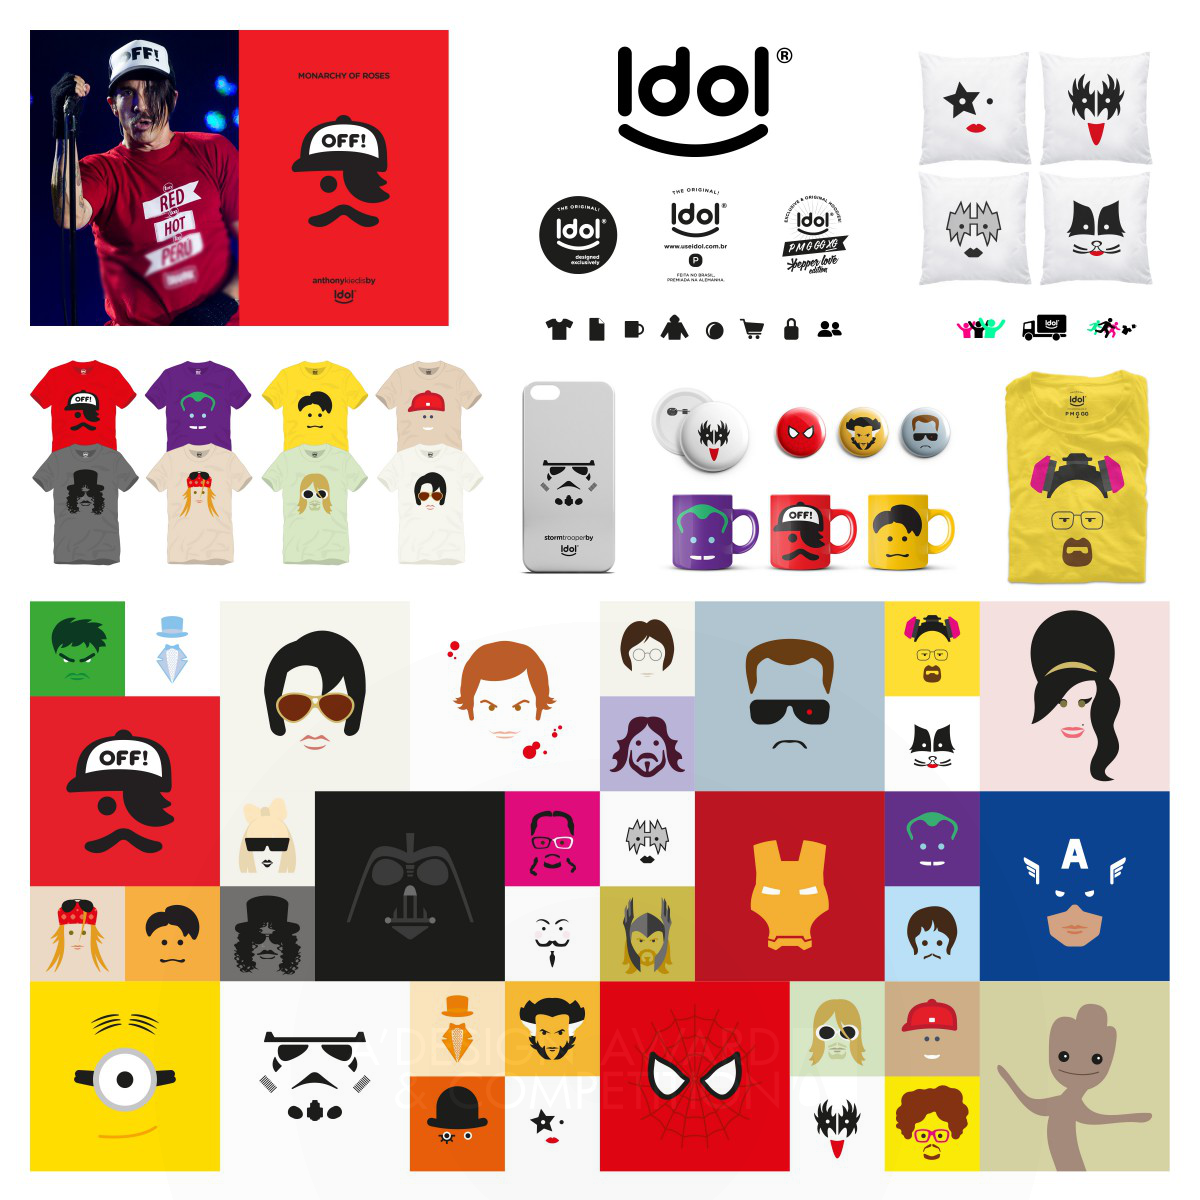 Idol <b>Minimalist t-shirts